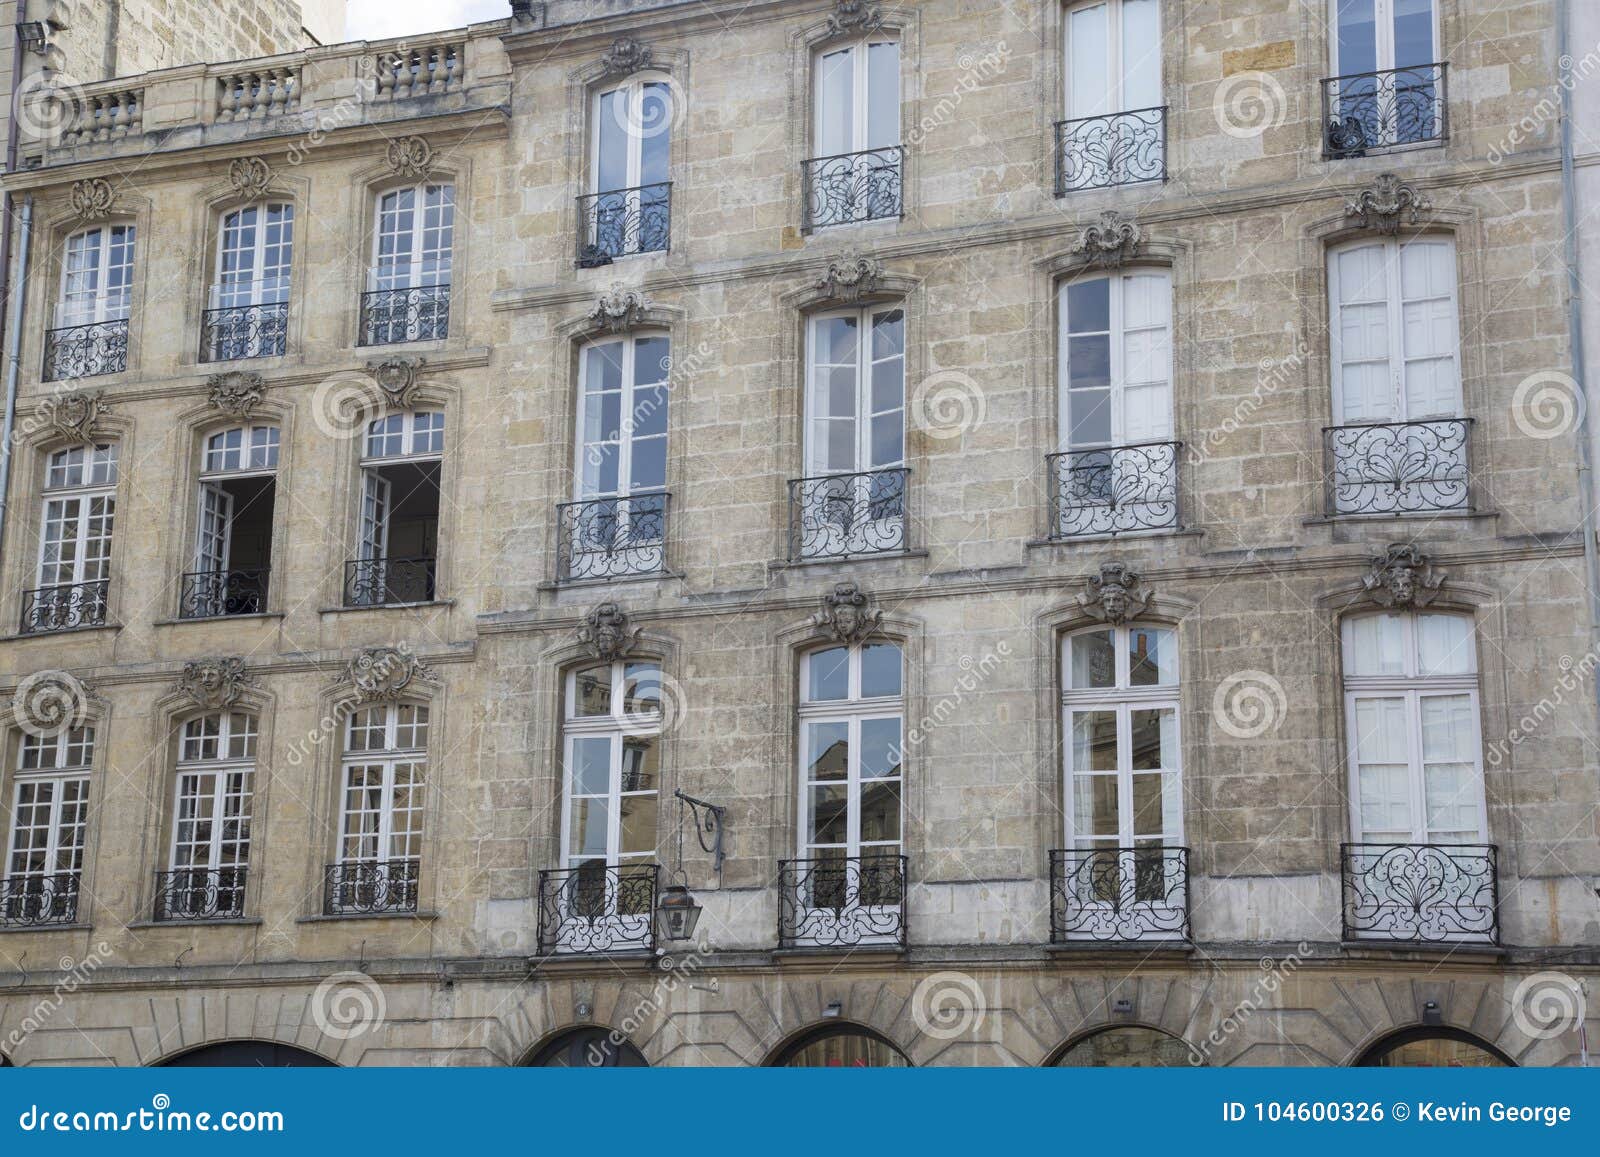 facade on parlement square, bordeaux